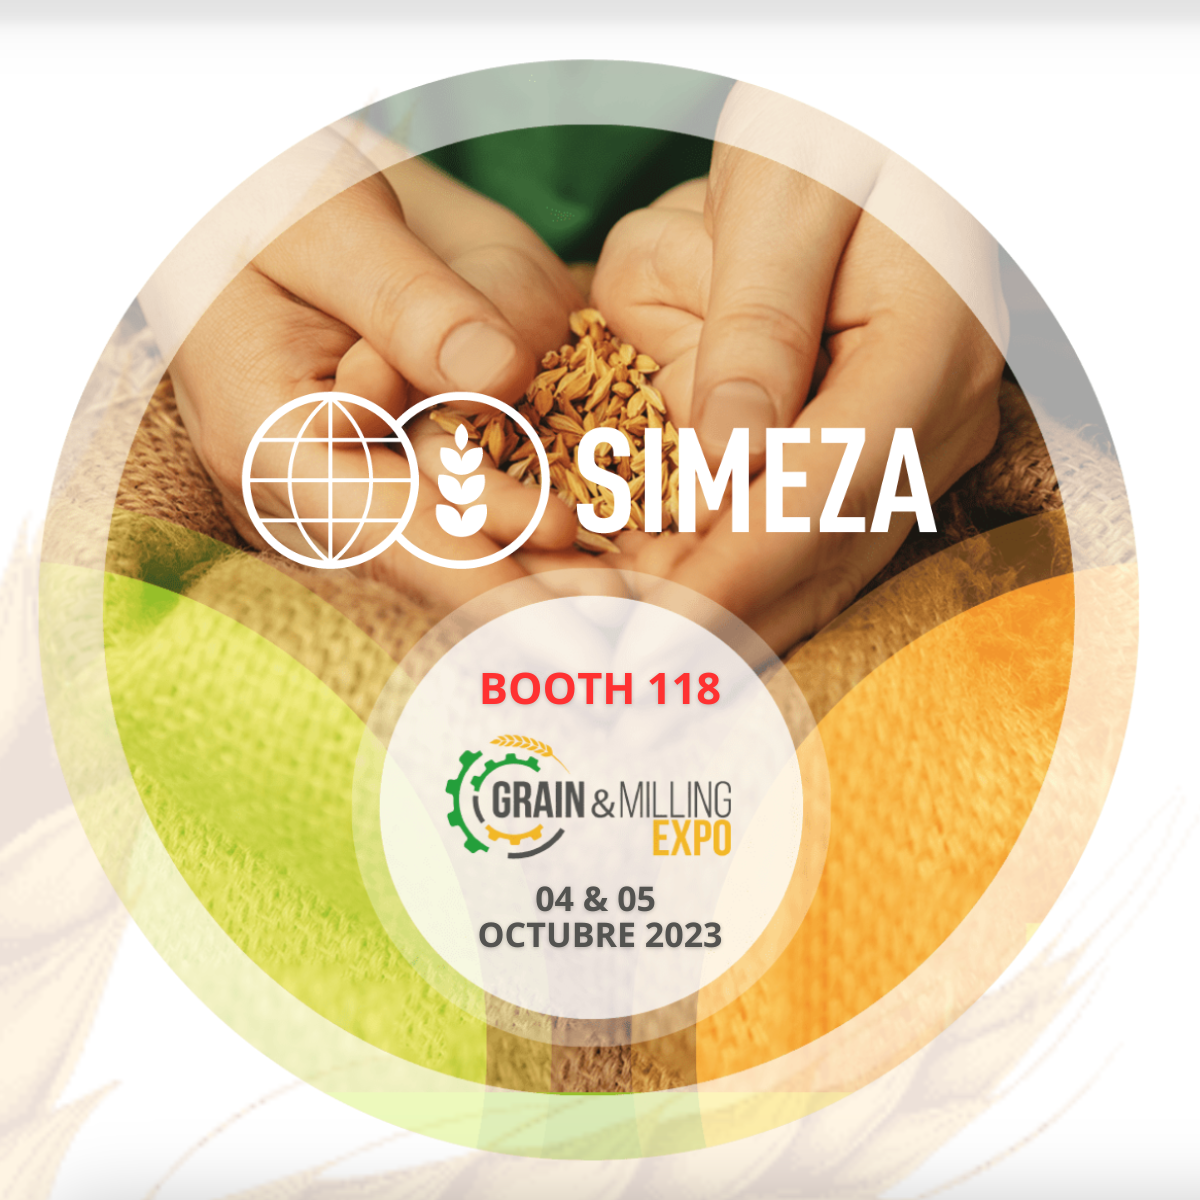 SIMEZA will attend the Grain and Milling Expo in Casablanca, Morocco